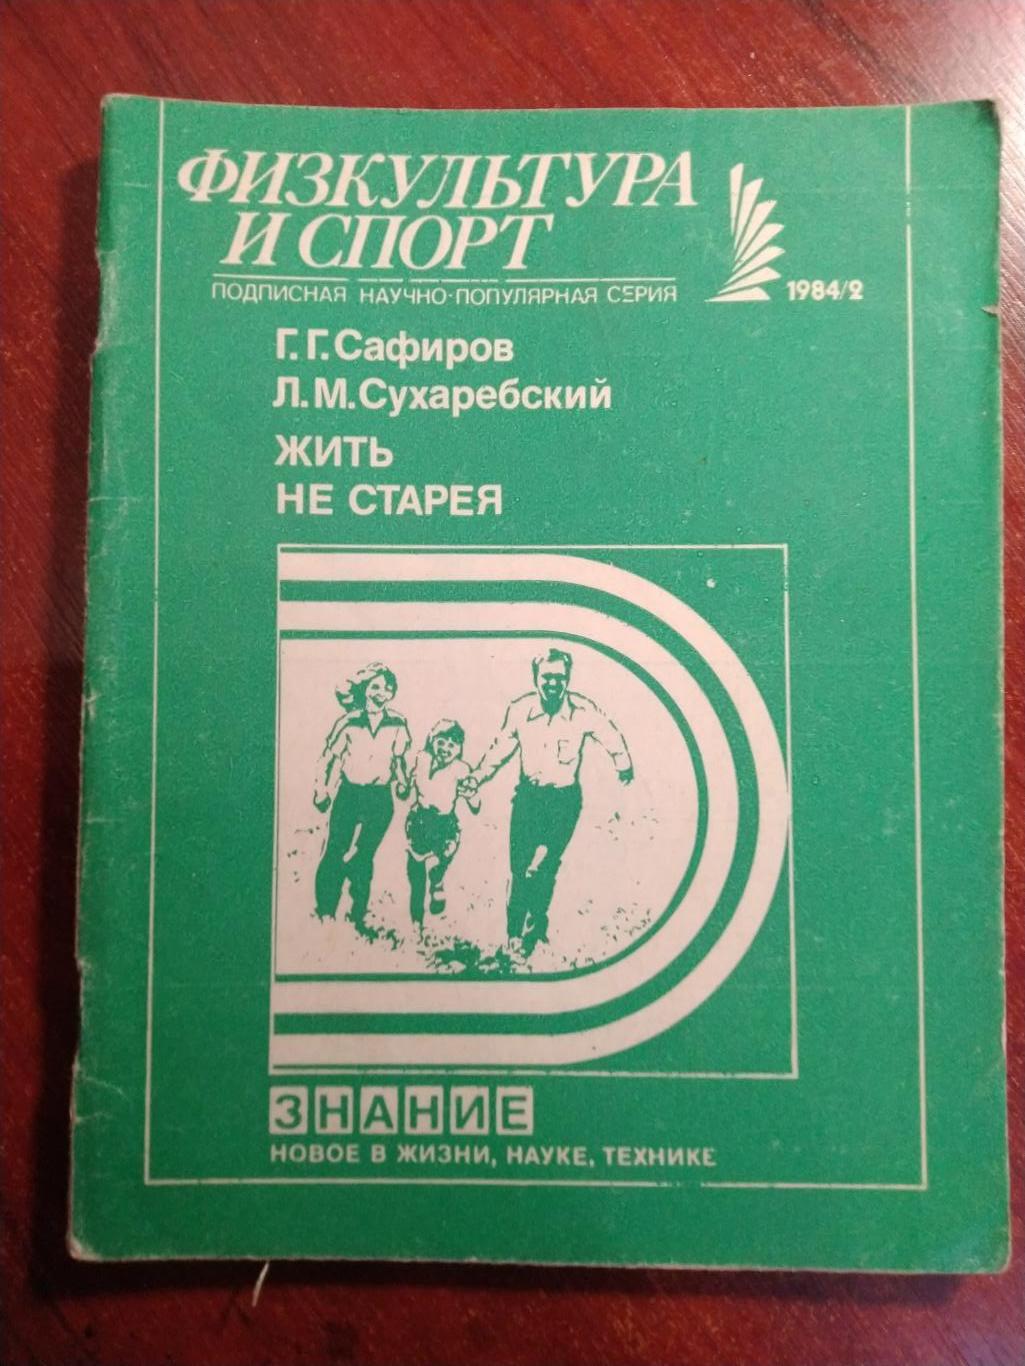 Серия Физкультура и спорт 1984 №2Жить не старея